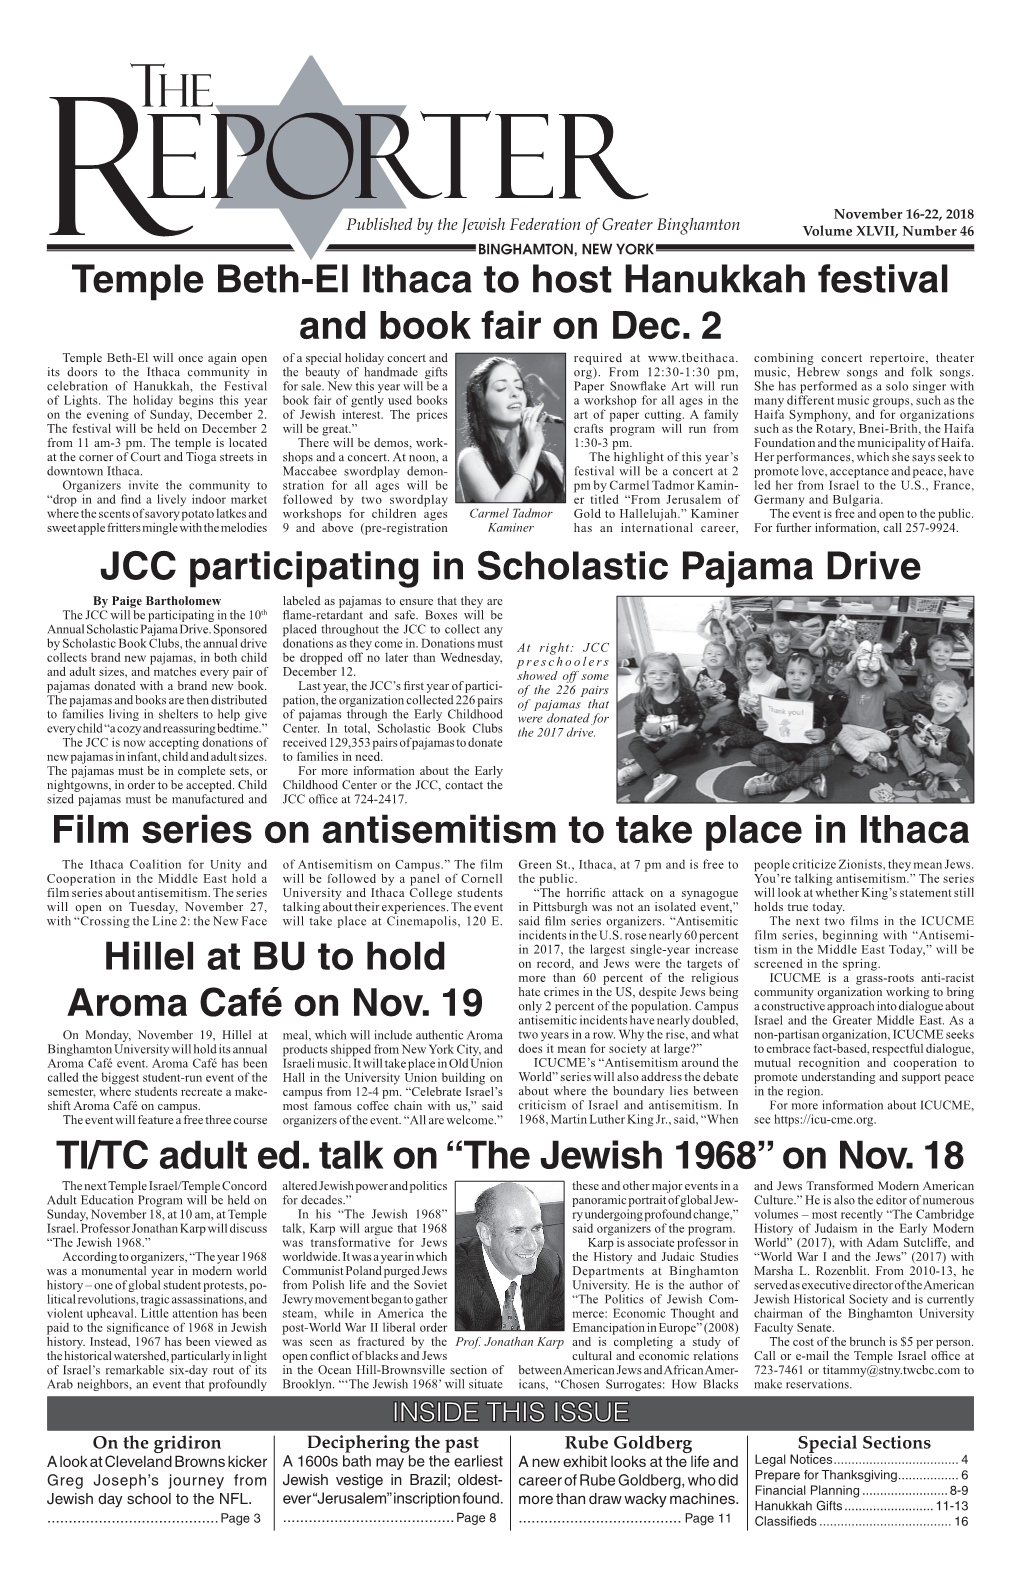 TI/TC Adult Ed. Talk on “The Jewish 1968” on Nov. 18 Temple Beth-El